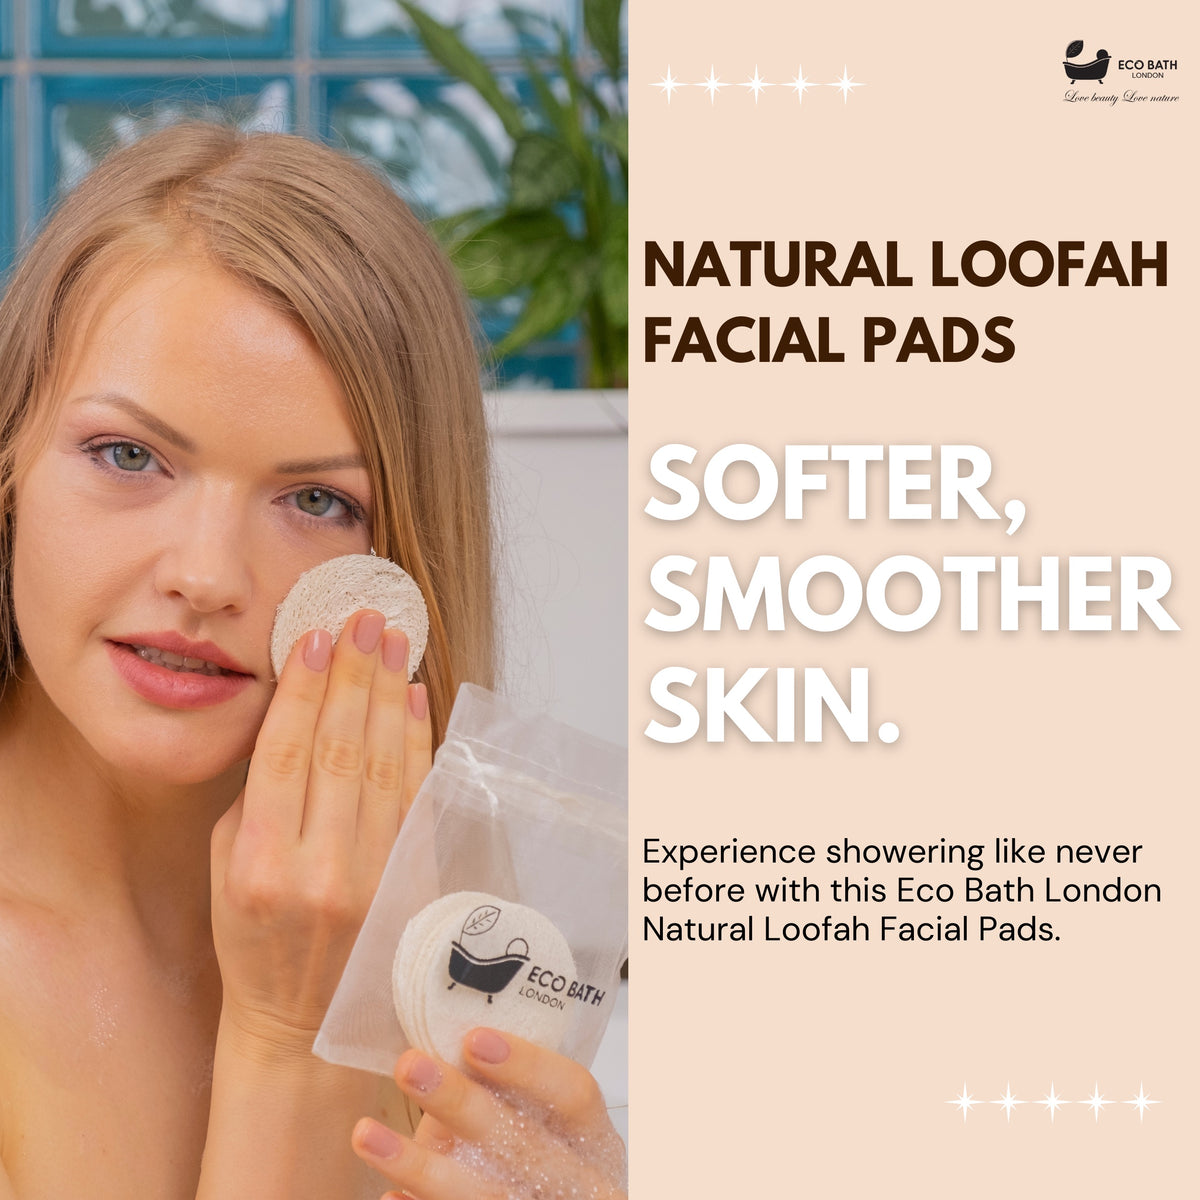 Eco Bath Natural Loofah Facial Pads